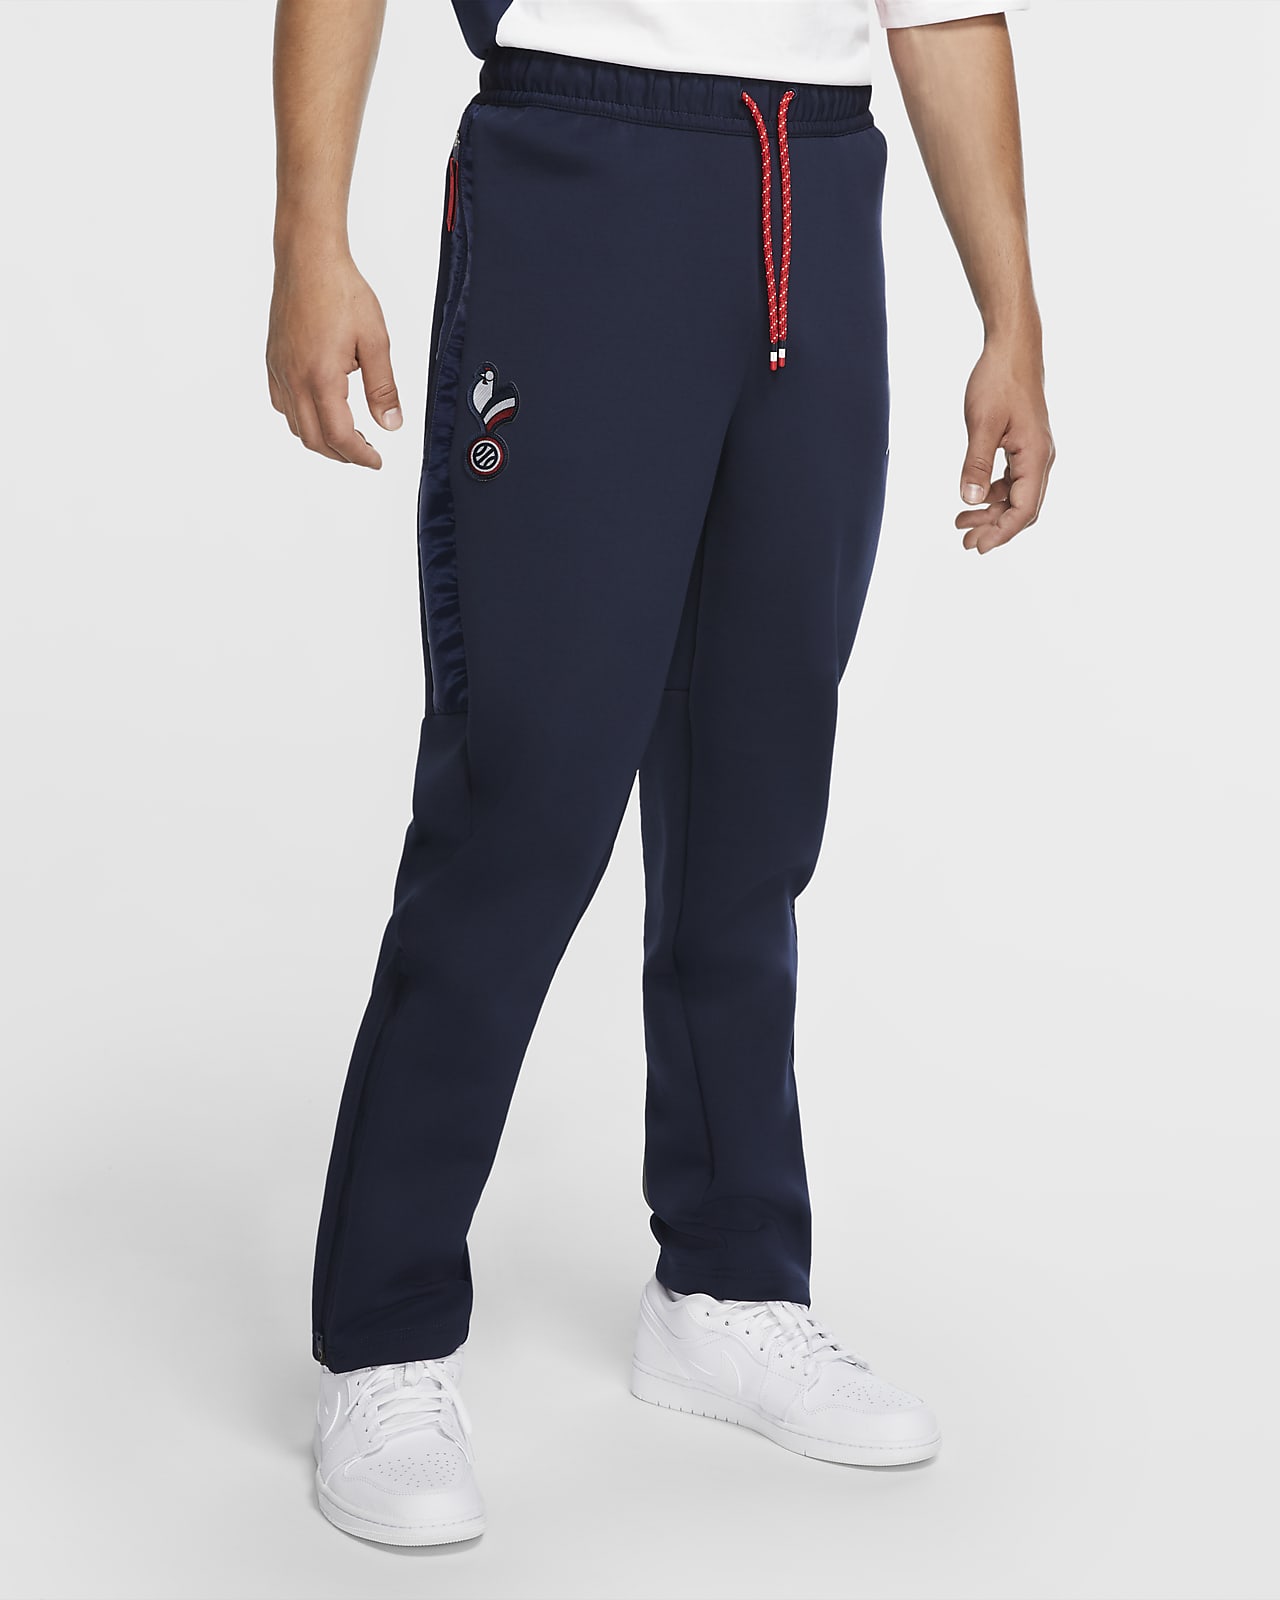 France Jordan Men's Game Trousers